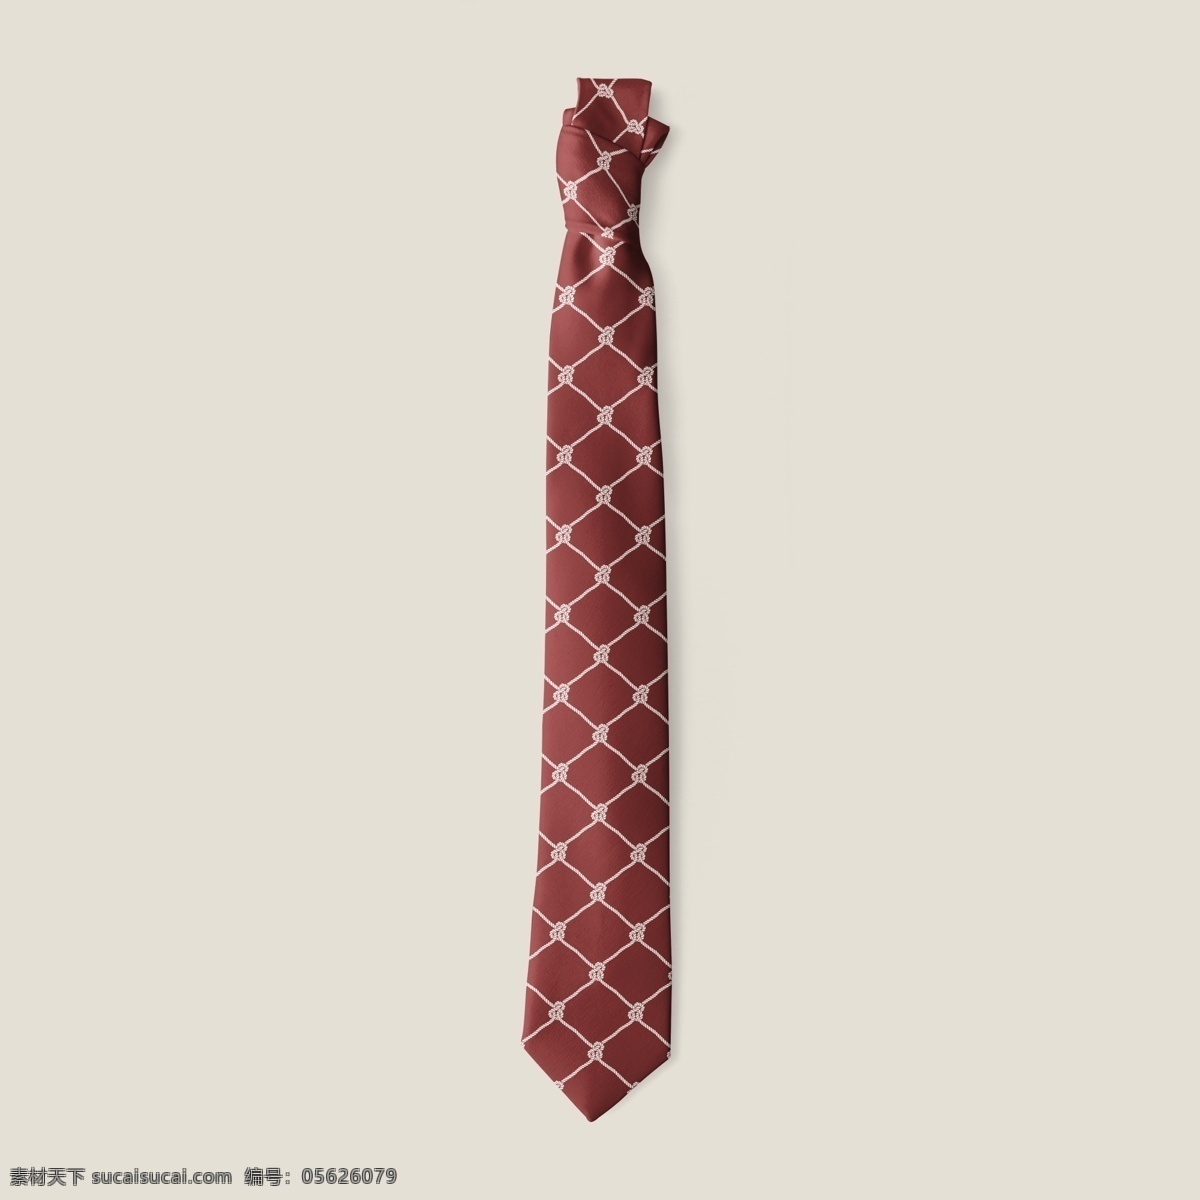 领带 样机 效果图 领带样机 领带效果图 领带图案设计 领带设计效果 领带展示 领带贴图 领带智能贴图 领带纹理 样机效果贴图 生活百科 生活用品